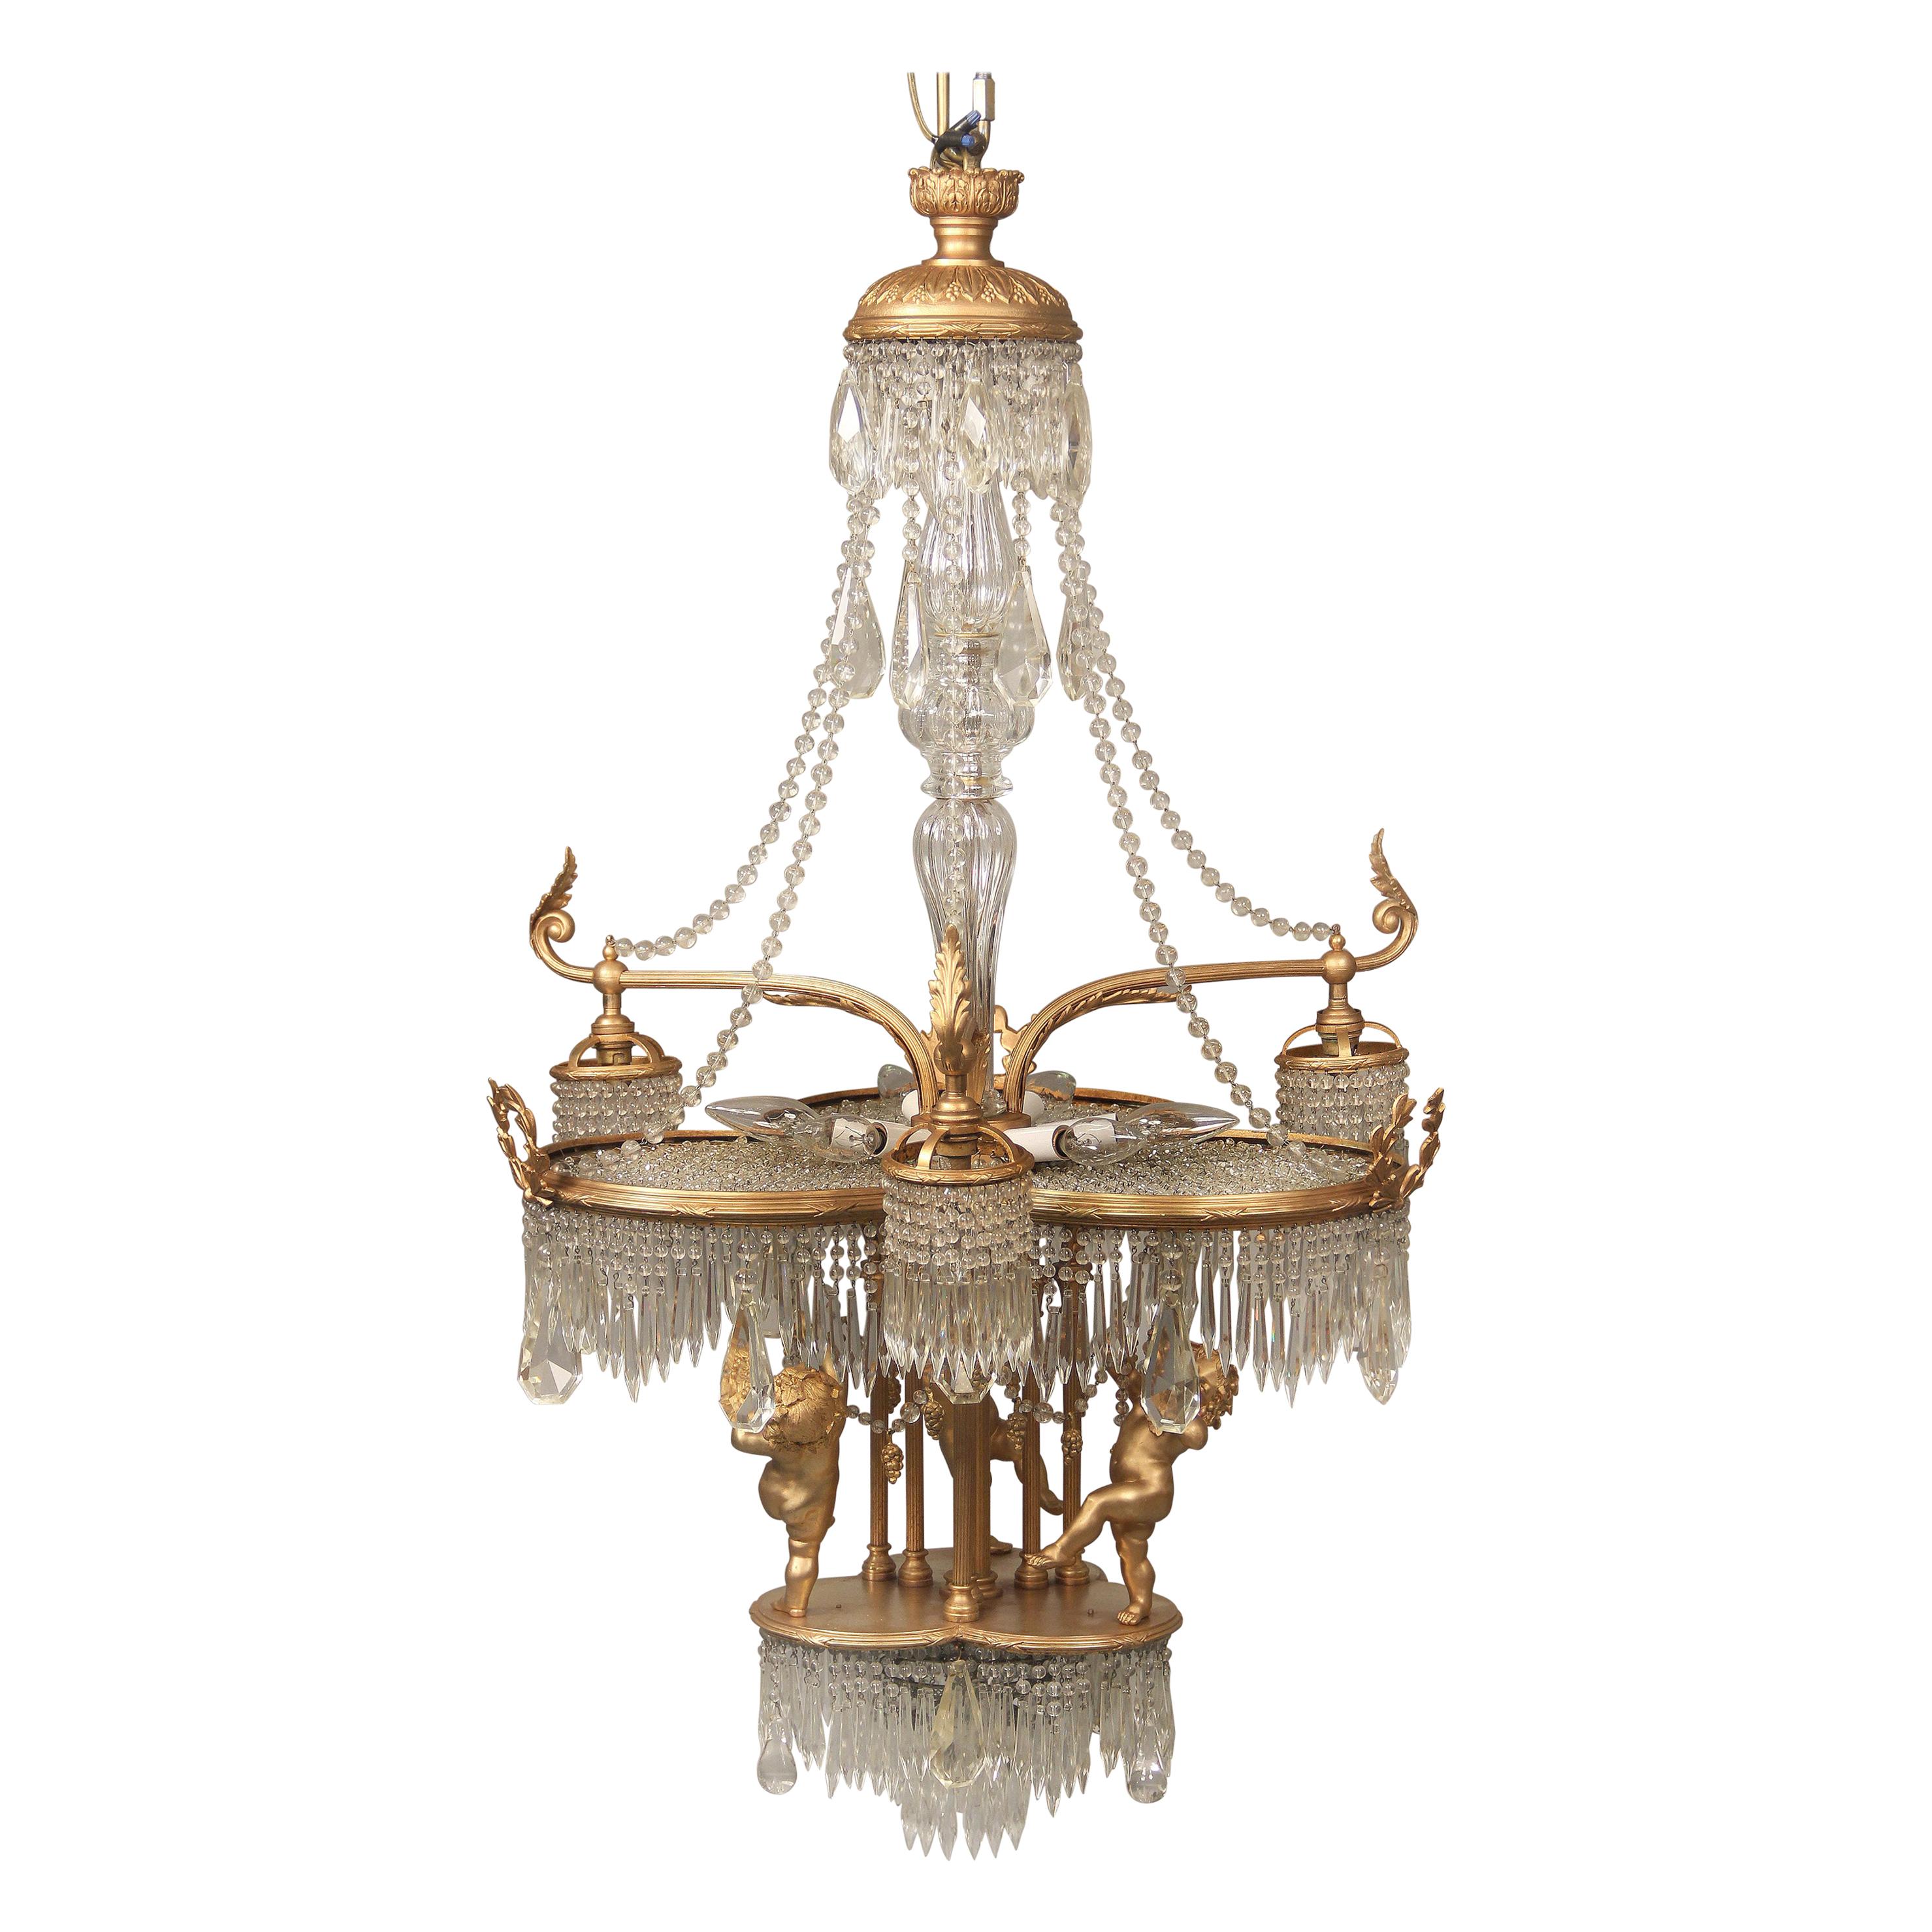 Wunderschöner dreizehnflammiger Kronleuchter aus vergoldeter Bronze und Kristall aus dem frühen 20. Jahrhundert